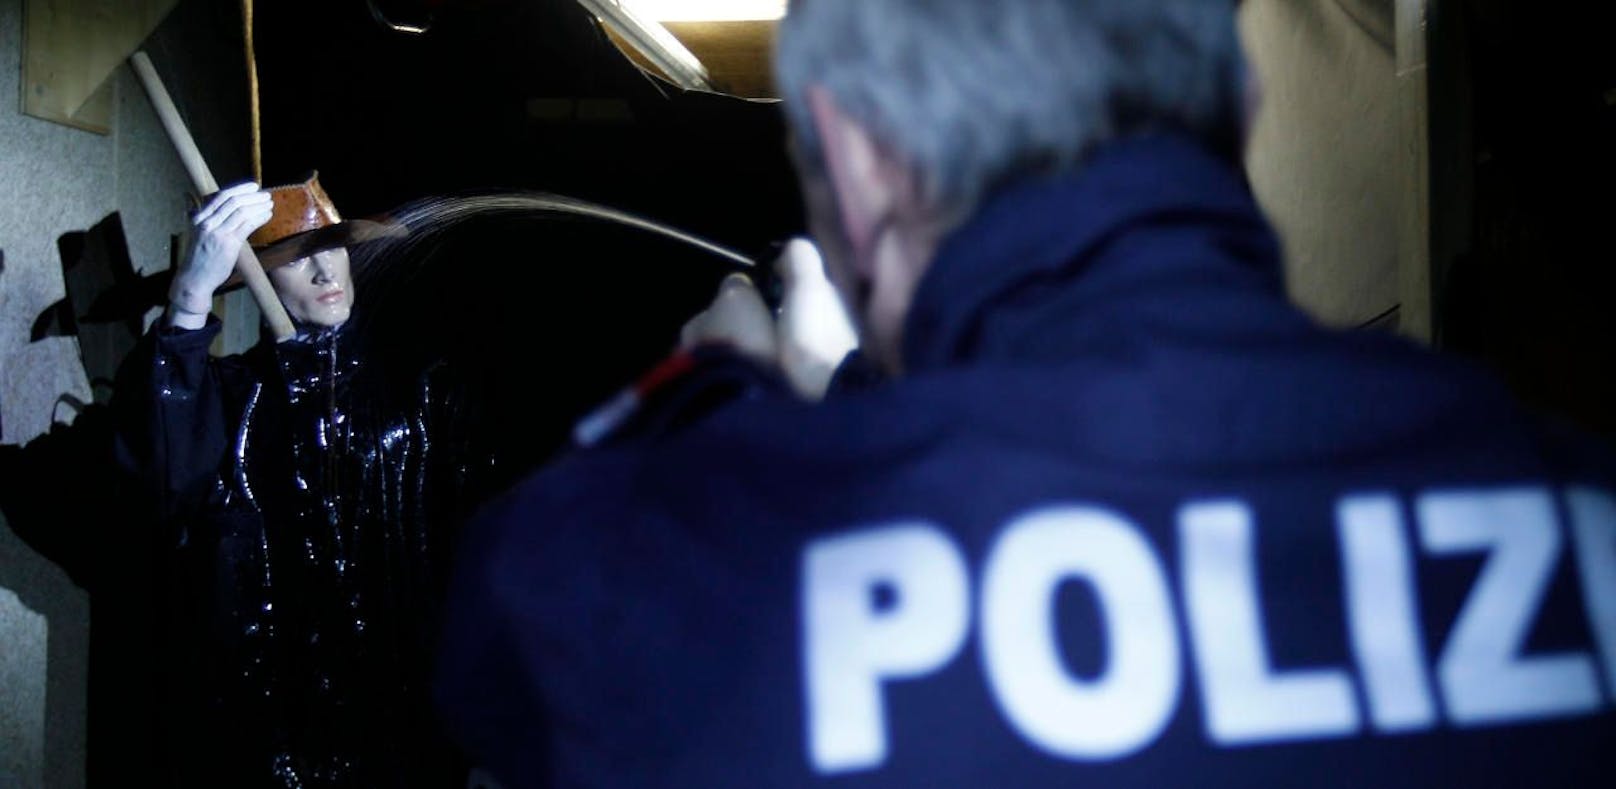 Ein Polizist demonstriert im Rahmen eines Trainings bei der Wiener Polizei den Einsatz von Pfefferspray. Symbolbild